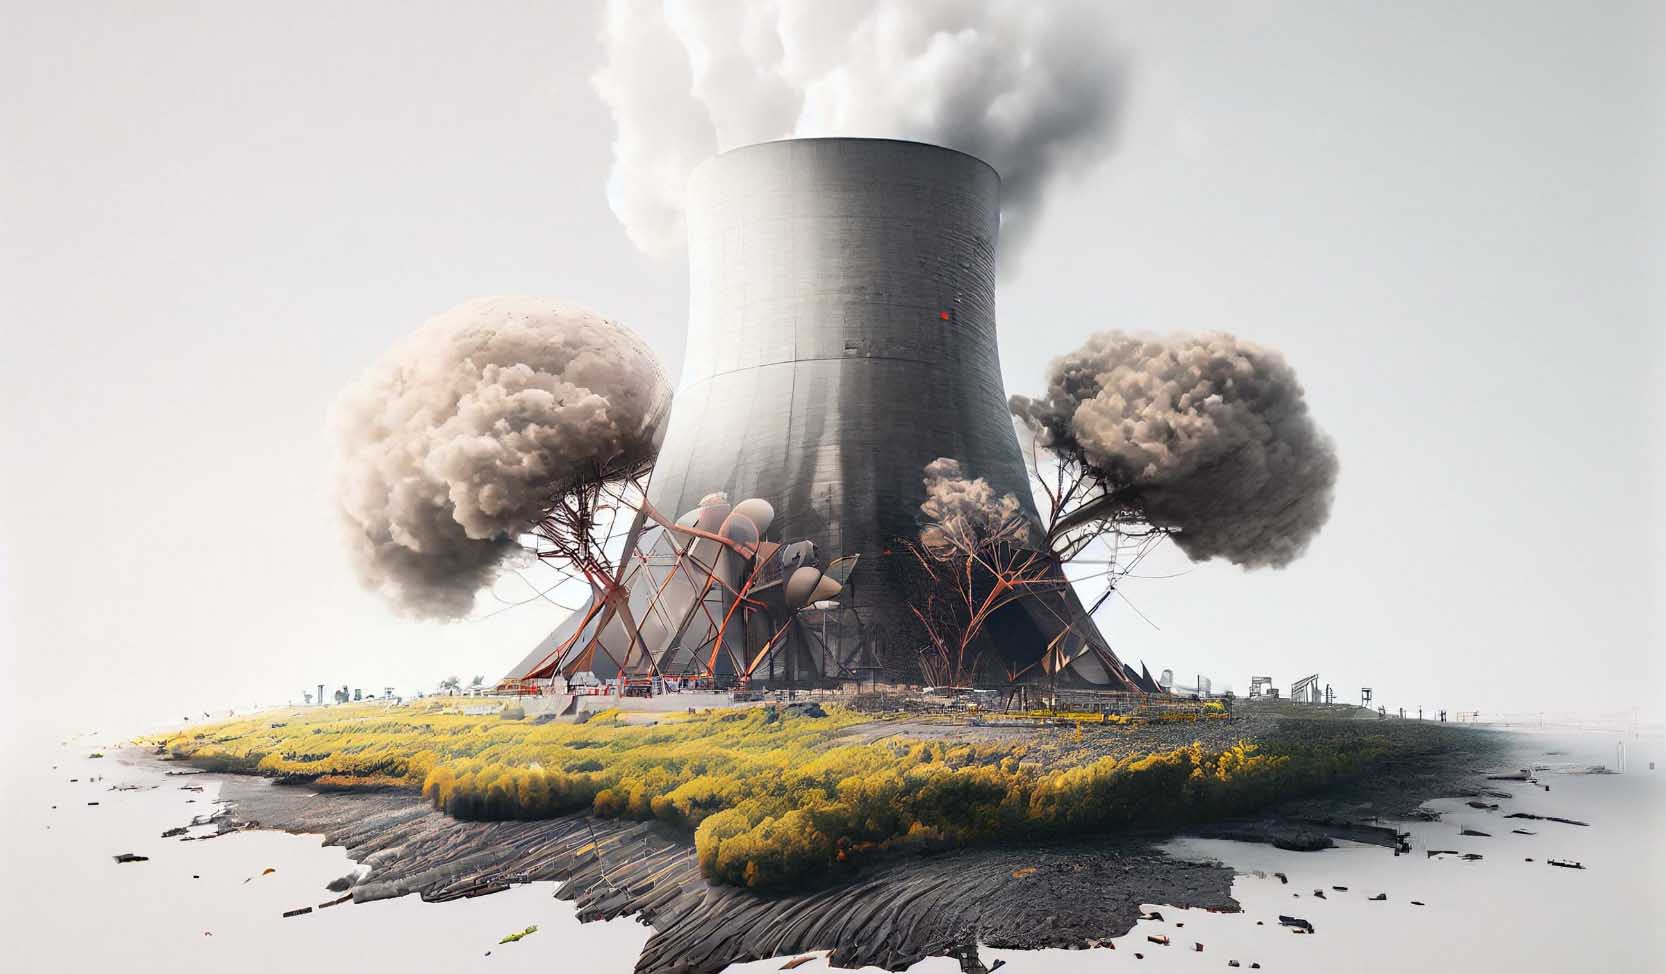 “Ein Atomkraftwerk zwischen grau-gefärbten Bäumen symbolisiert die Verwüstung der Natur durch radioaktiven Müll”